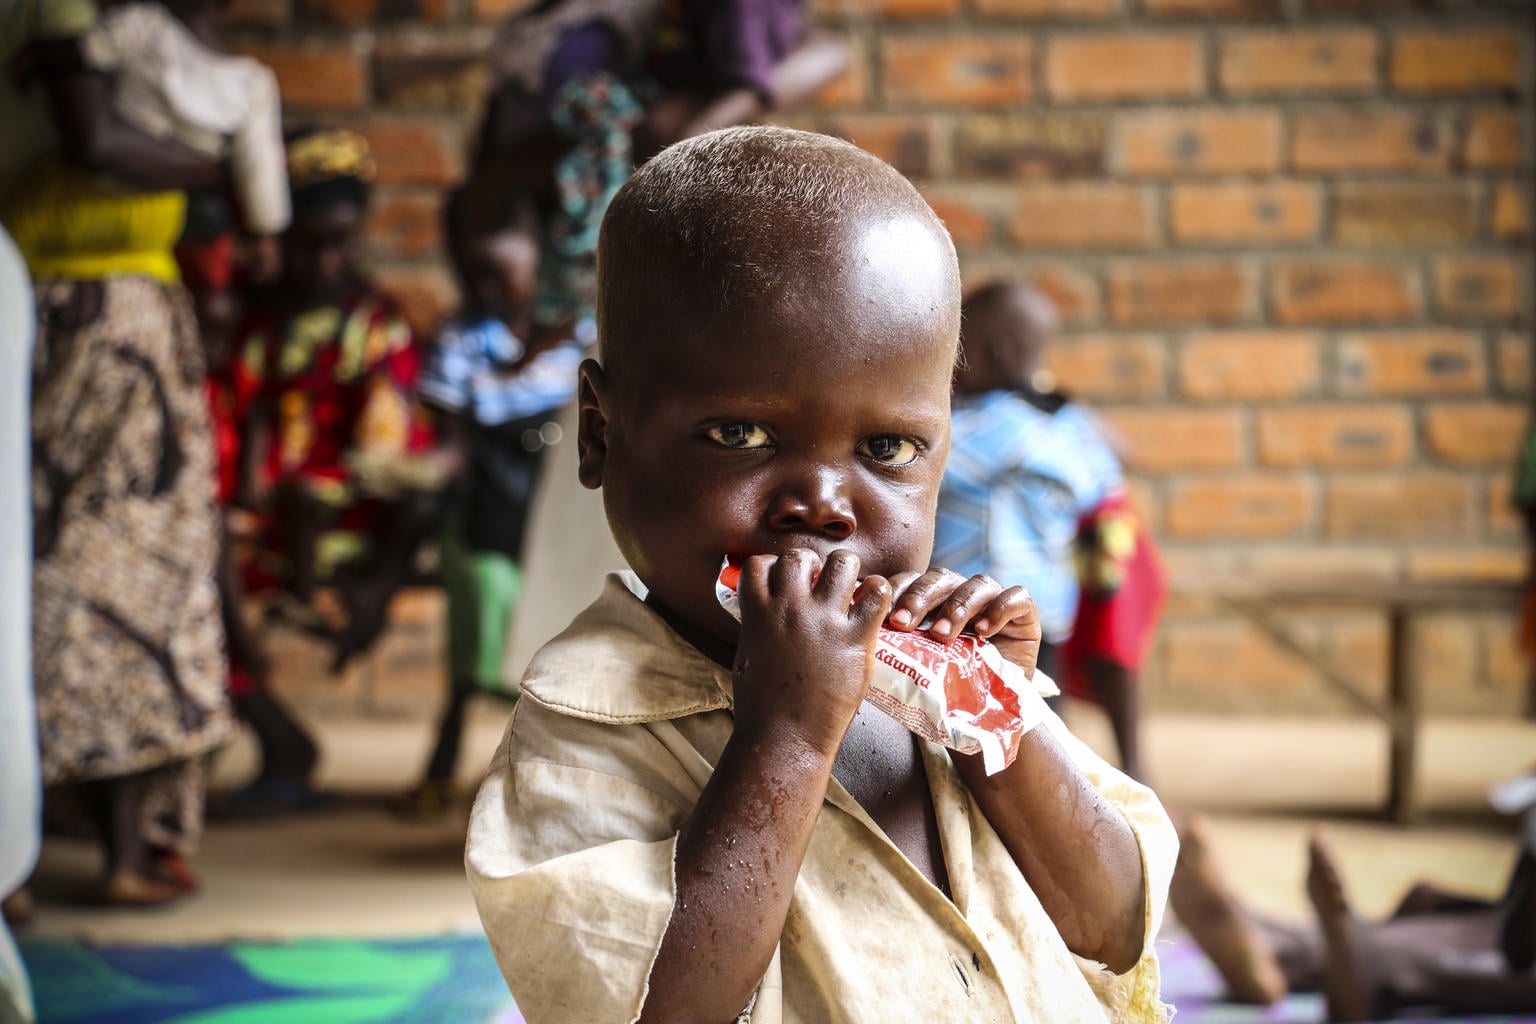 中央アフリカ共和国 深刻な栄養危機 避難民の増加 ユニセフ最新報告書発表